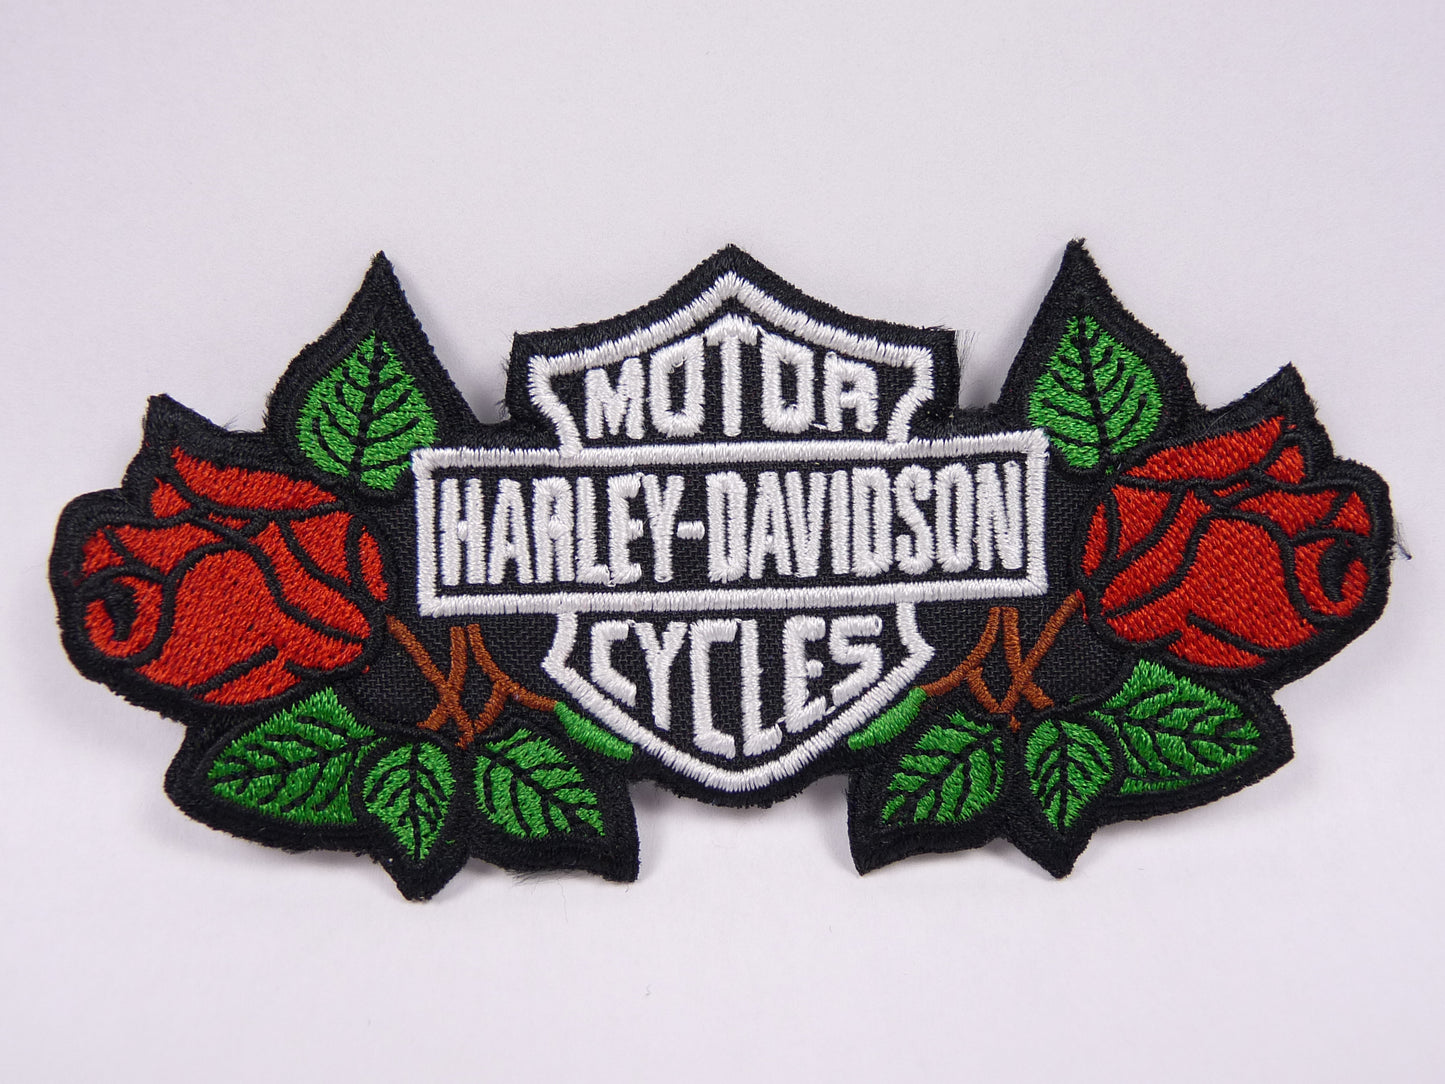 PTC69 Patch brodé thermocollé : logo Harley Davidson Roses largeur environ 11.8 cm hauteur environ 5.5 cm